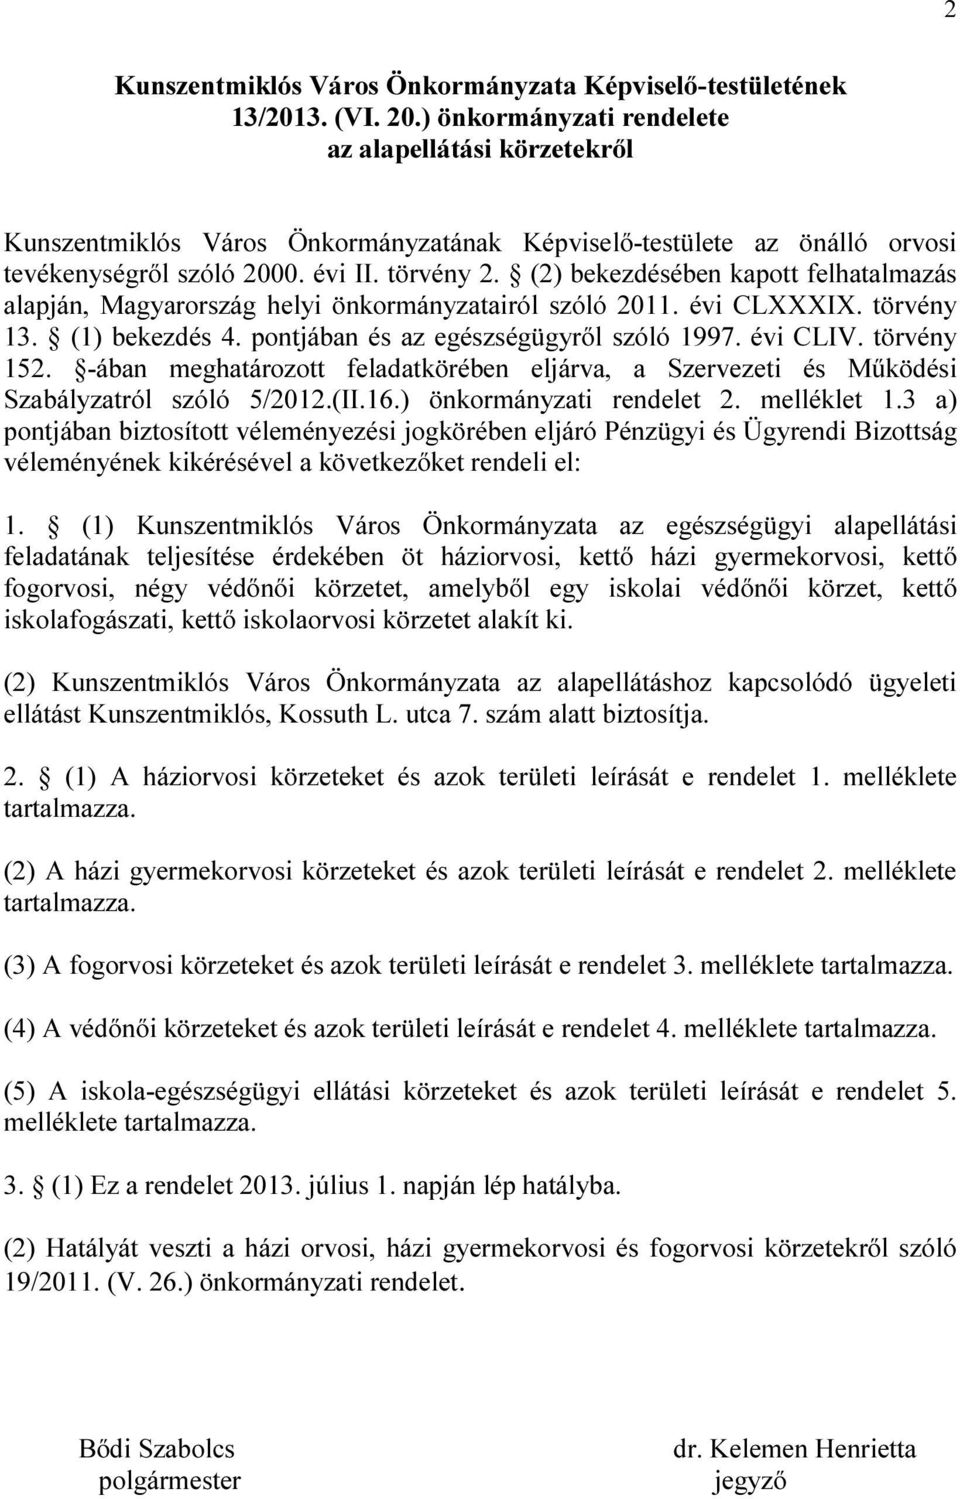 (2) bekezdésében kapott felhatalmazás alapján, Magyarország helyi önkormányzatairól szóló 2011. évi CLXXXIX. törvény 13. (1) bekezdés 4. pontjában és az egészségügyről szóló 1997. évi CLIV.